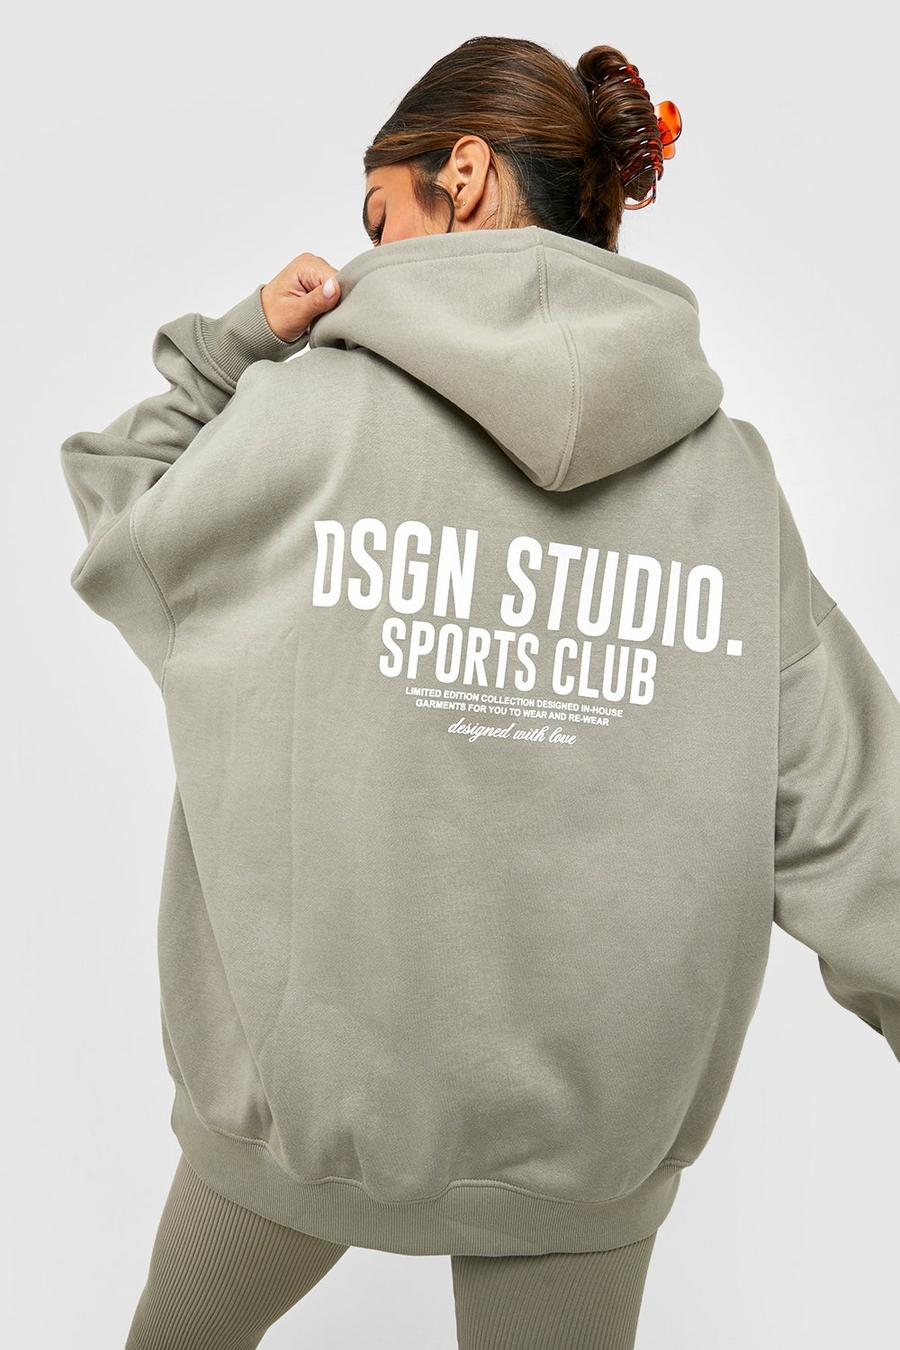 Felpa oversize con slogan Dsgn Studio Sports Club e cappuccio, Washed khaki